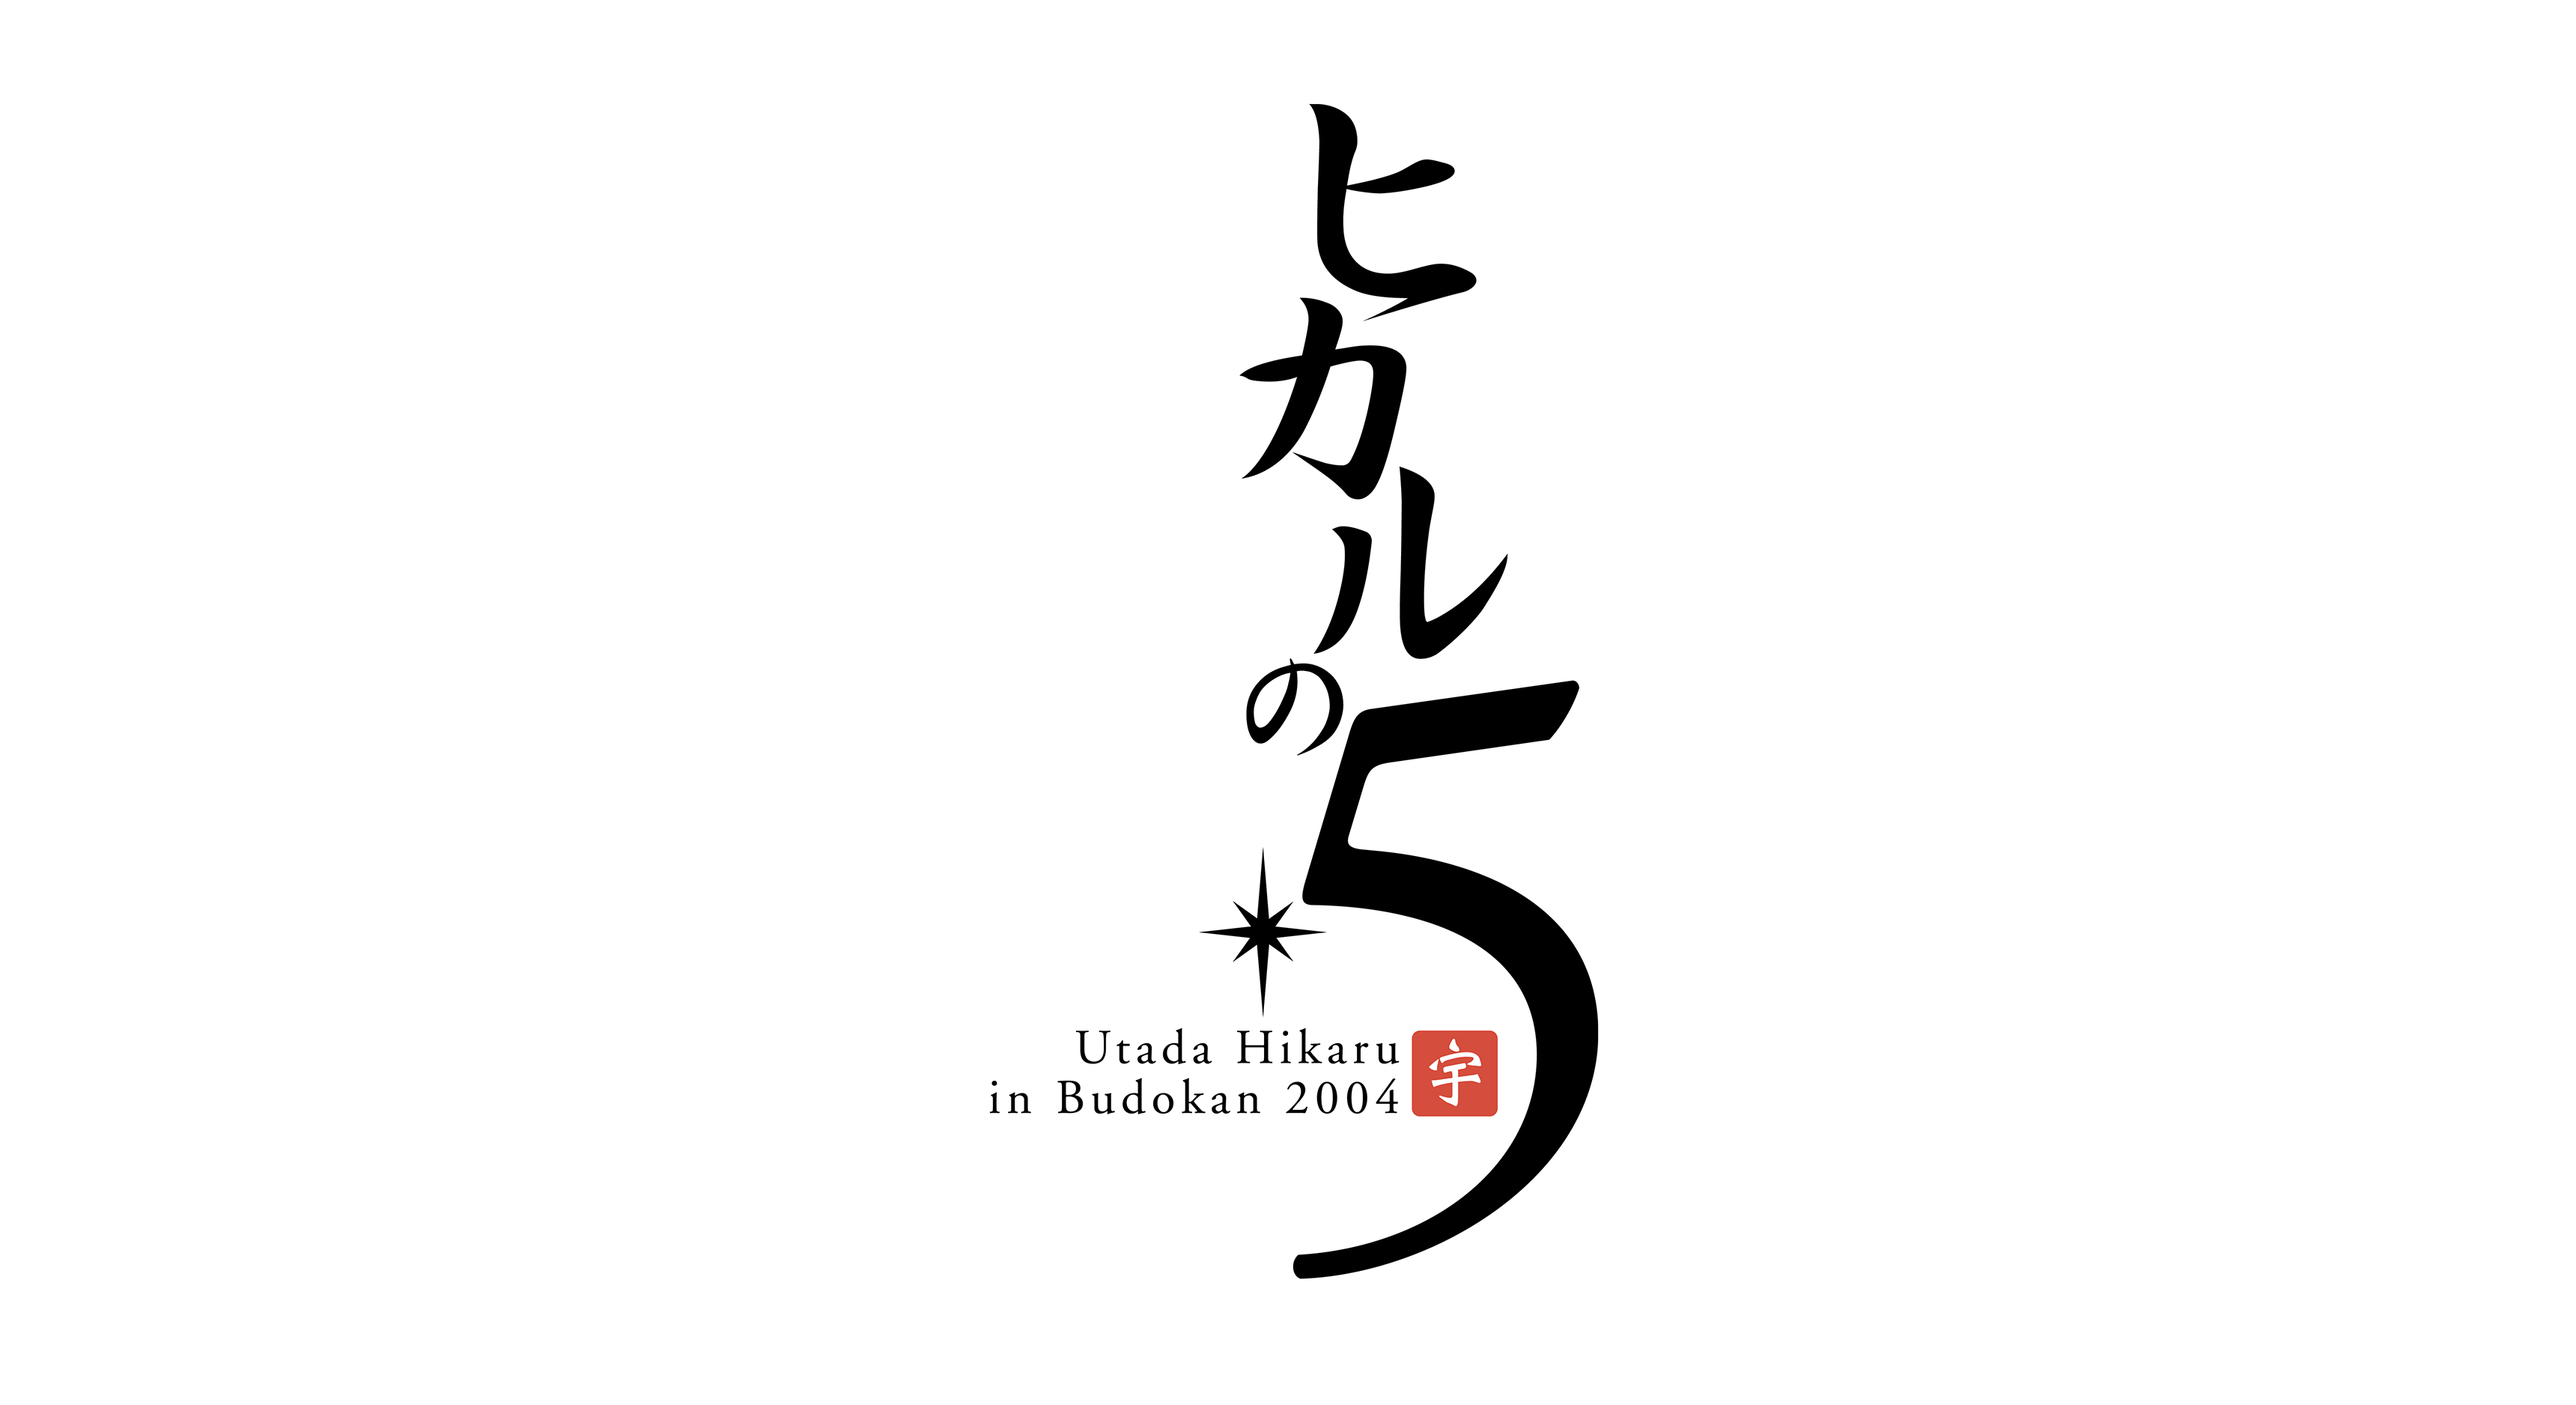 Utada Hikaru in Budokan 2004「ヒカルの5」のサムネイル